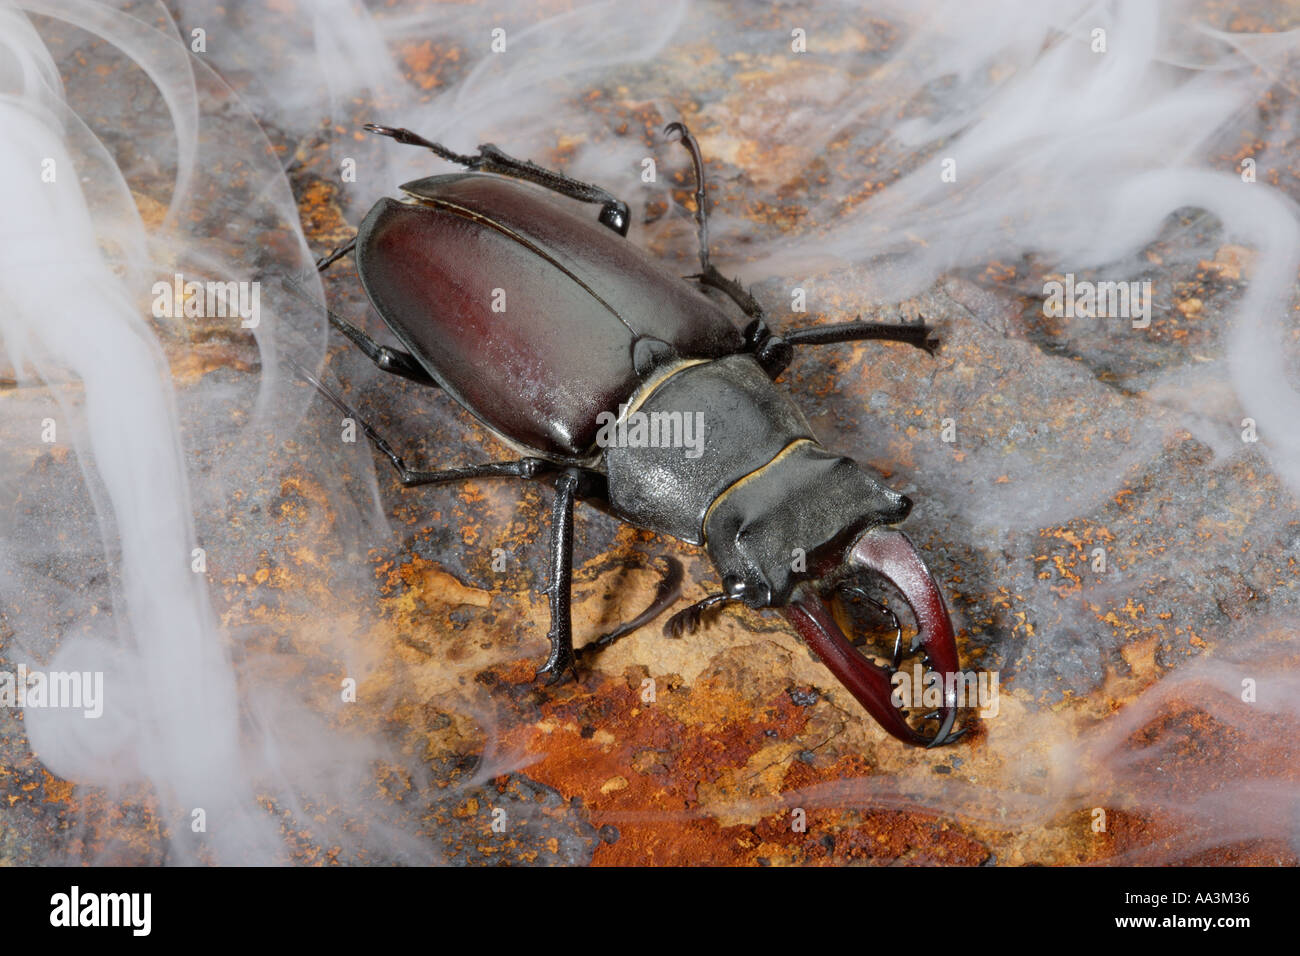 Stag beetle con corna mandibole circondato da nebbia Foto Stock